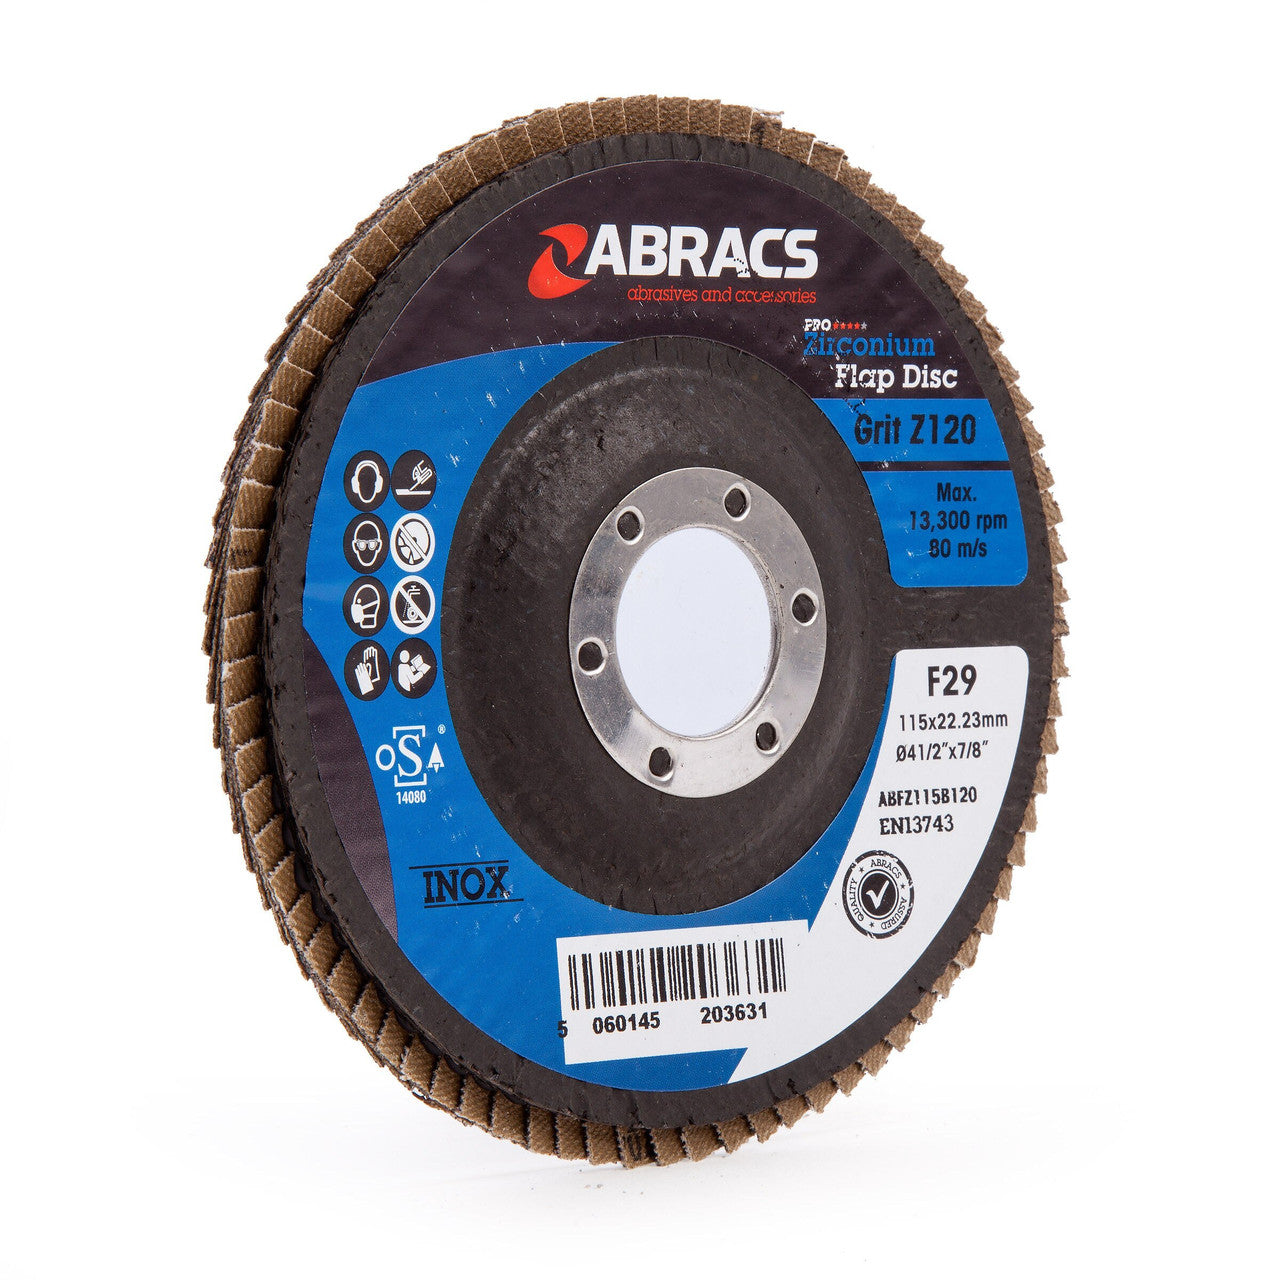 Abracs ABFZ115B0120 Pro Zirconium Flap Disc 115mm 120 Grit (5 Pack)